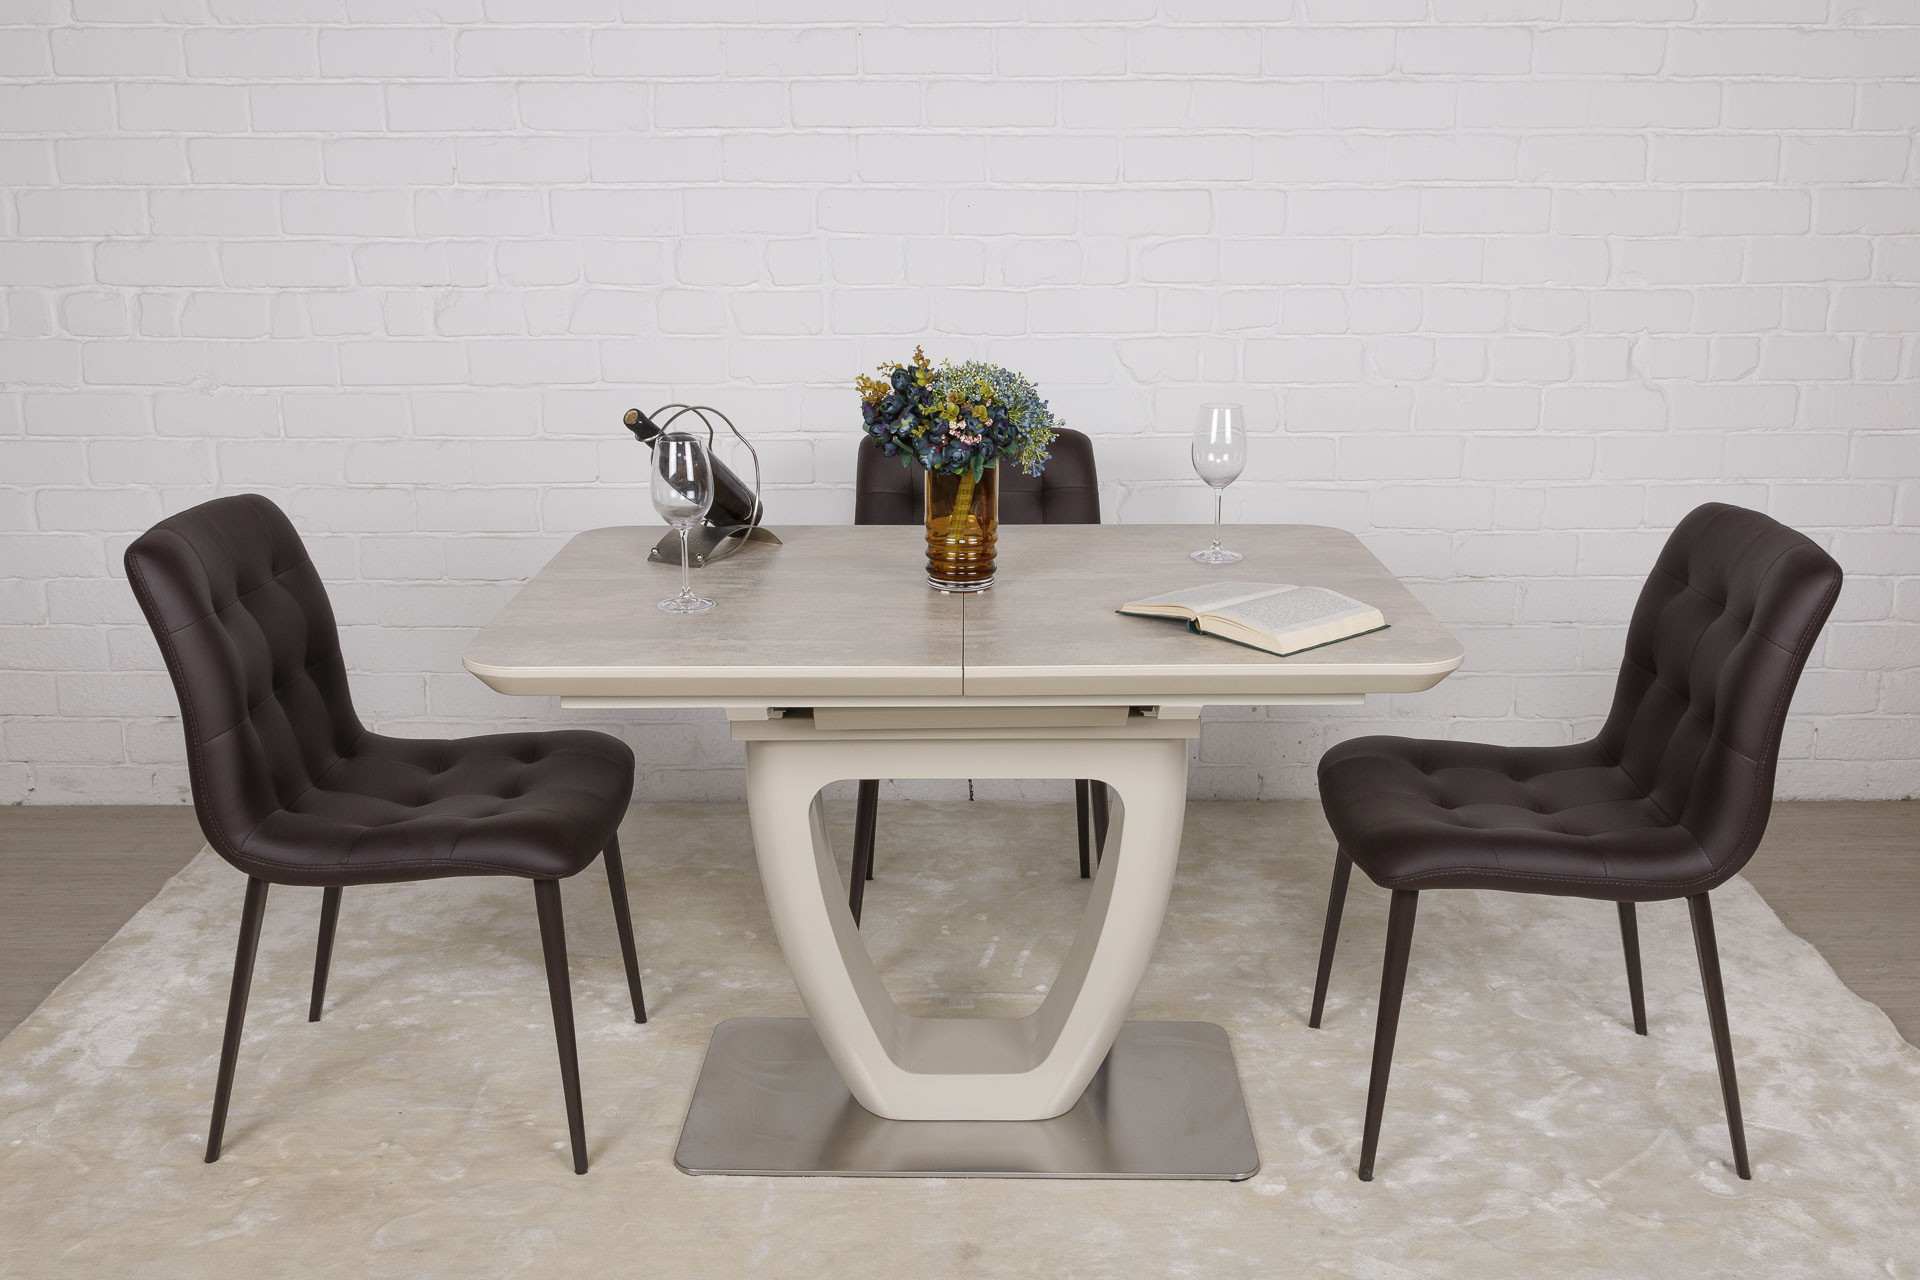 Стол обеденный модерн NL- Toronto NEW (120) керамика бежевый